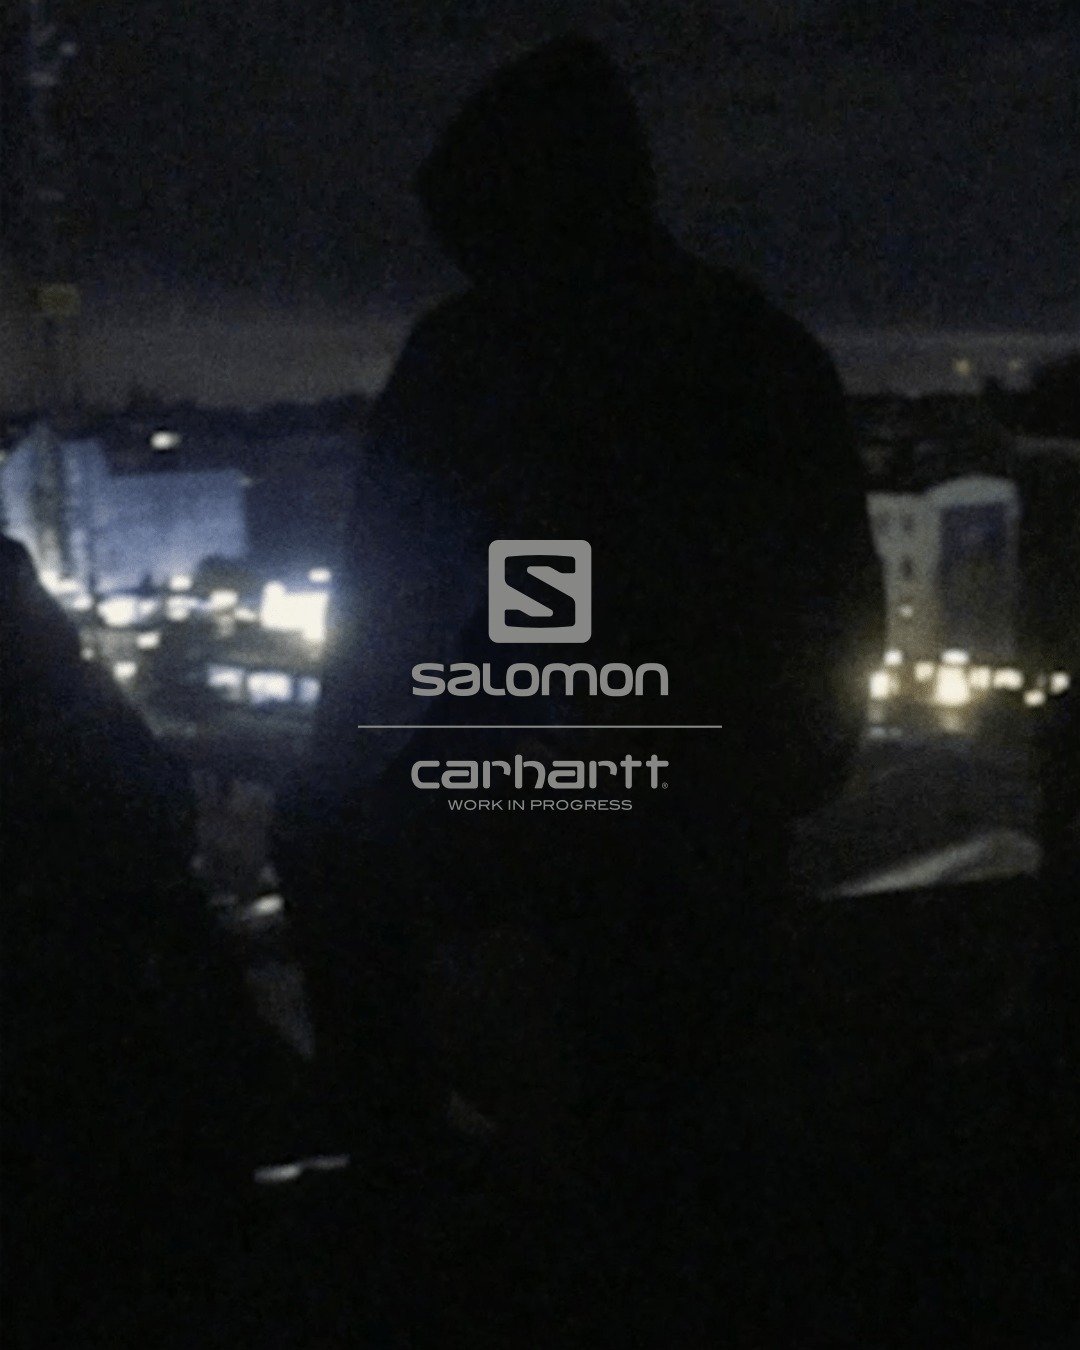 SALOMON x CARHARTT WIP 聯名系列將於 2 月 10 日登場